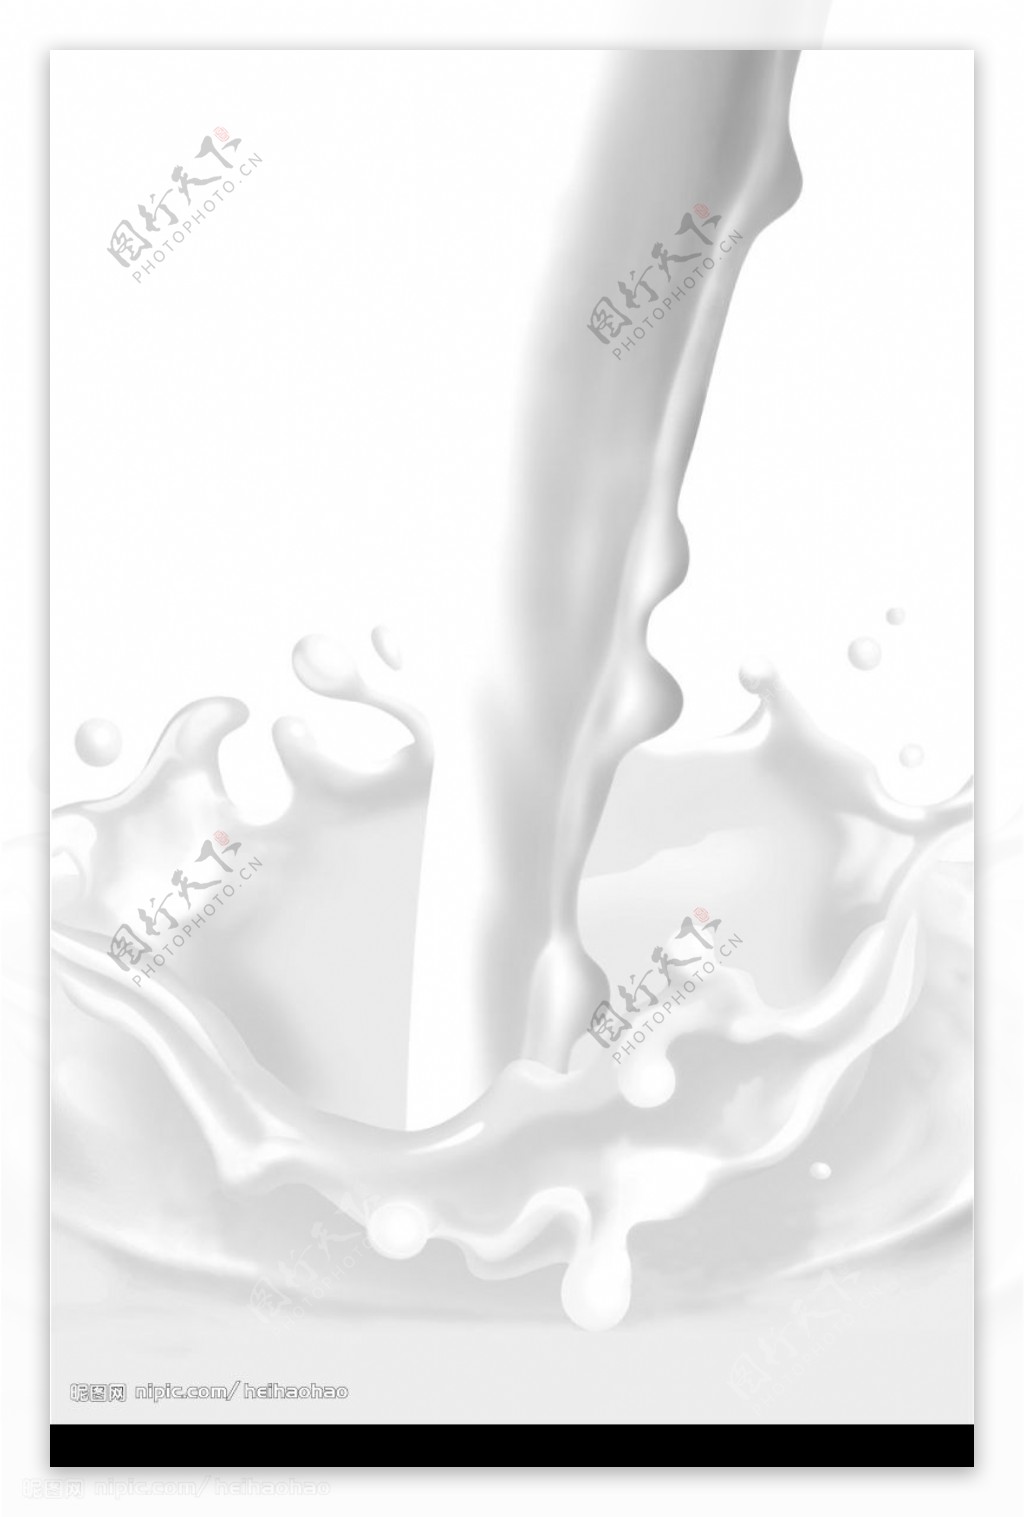 牛奶等液体浇灌图片